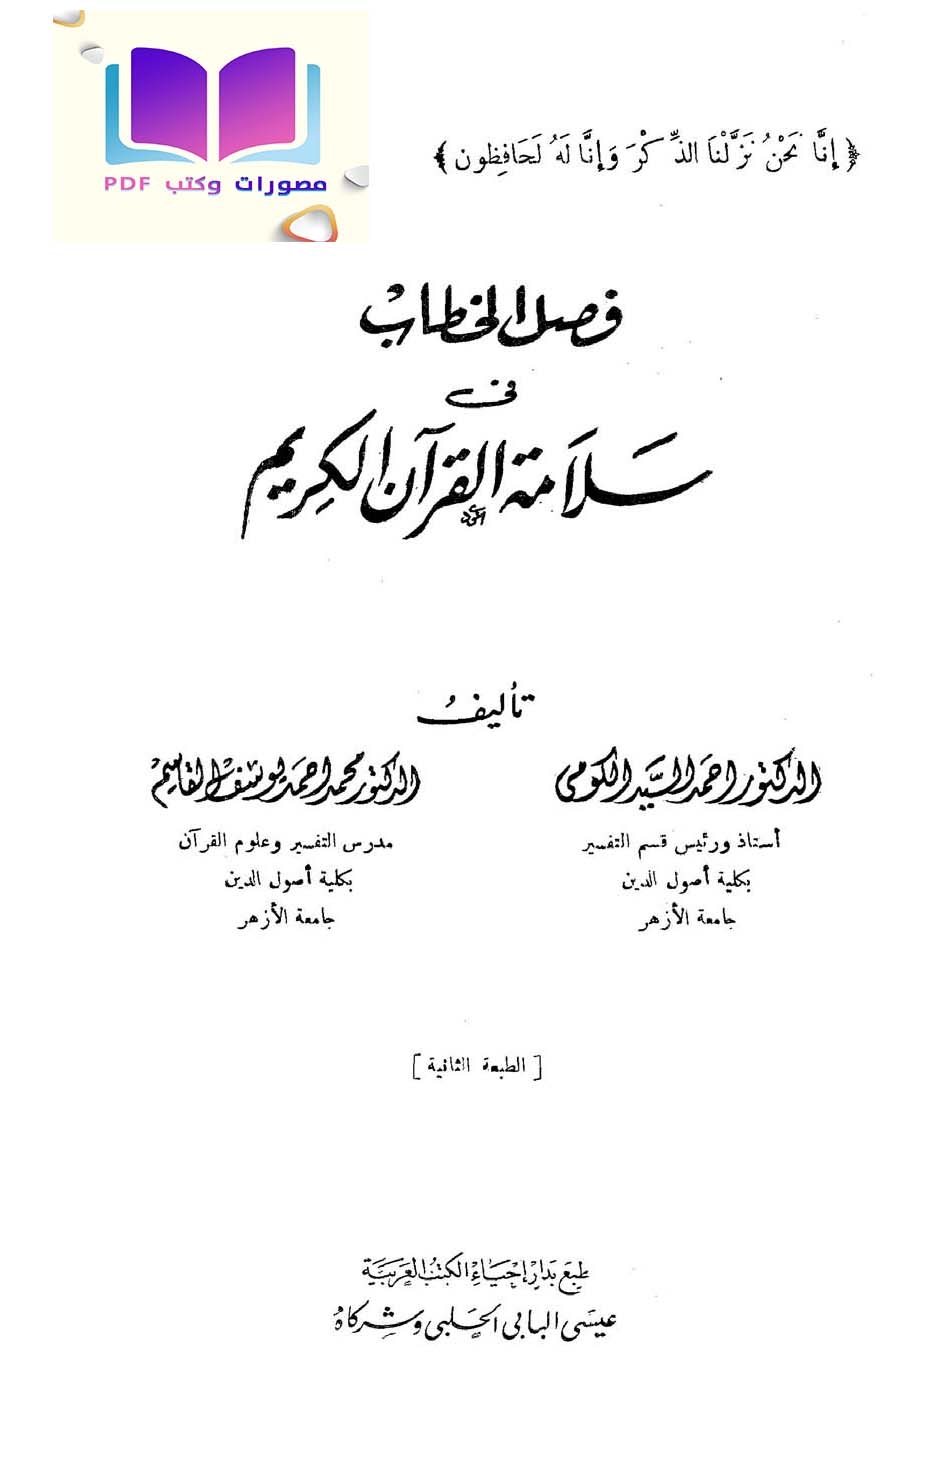 فصل الخطاب في سلامة القرآن الكريم د. أحمد السيد الكومي 